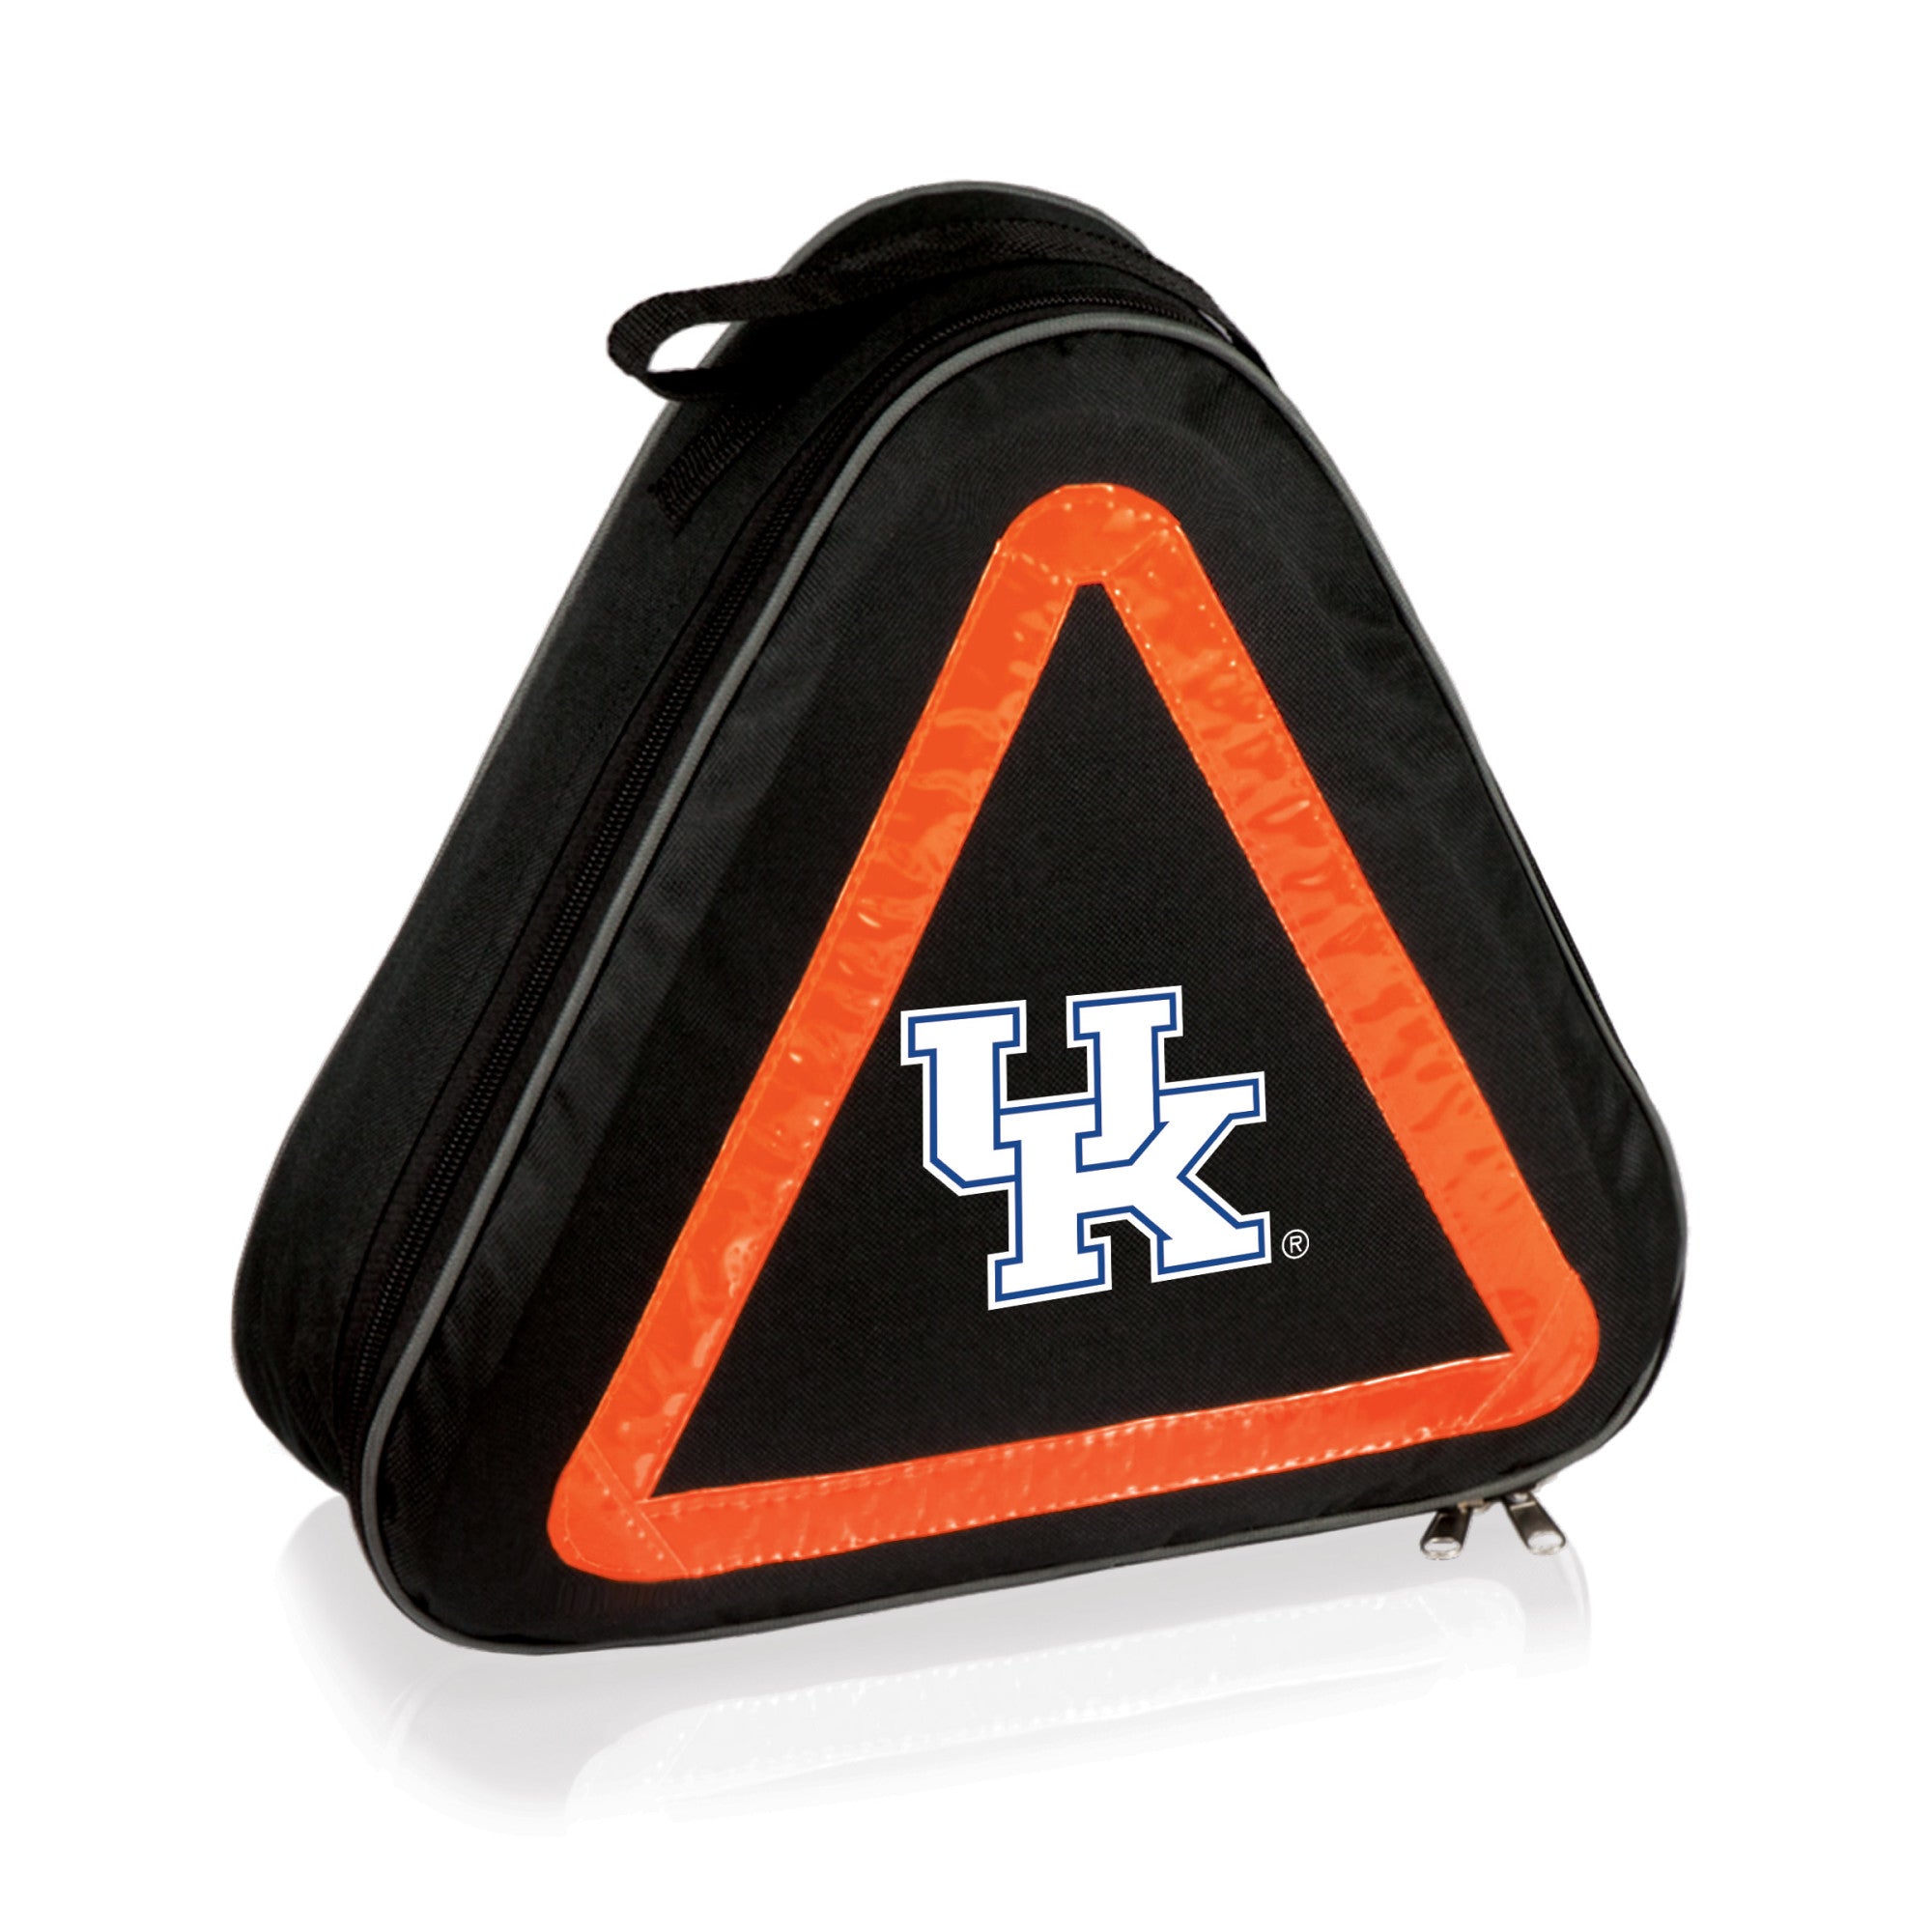 Kentucky Wildcats - Roadside Emergency Car Kit